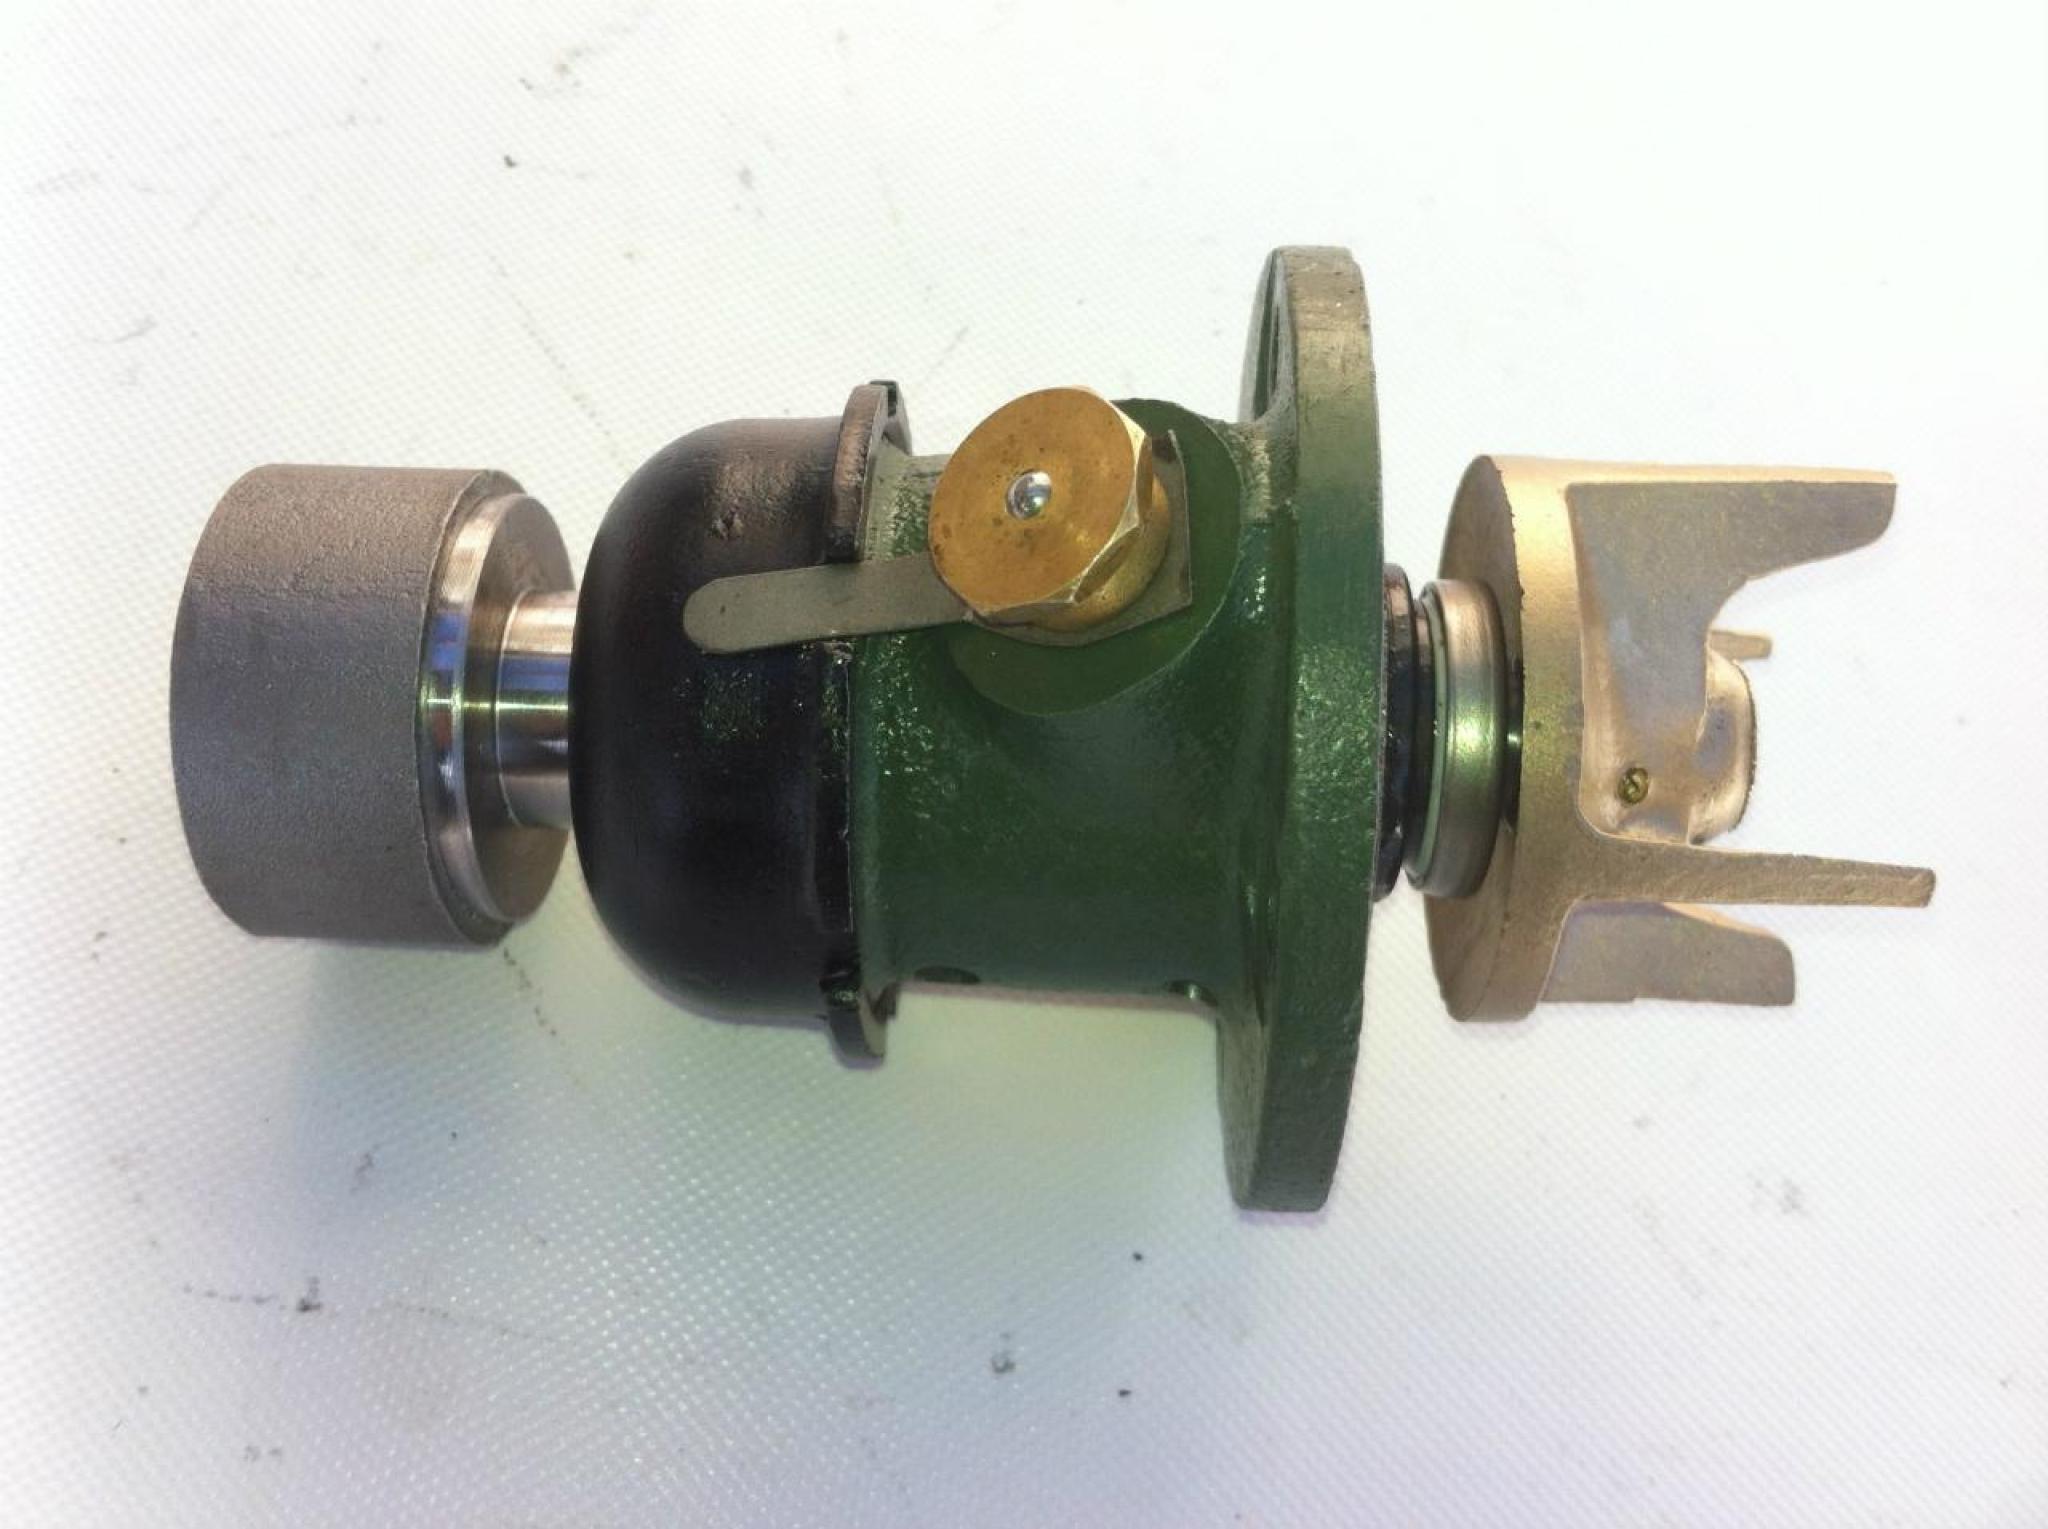 PEUGEOT 201. 301. 401. Pompe origine modifier par garniture mécanique monobloc céramique et axe sur roulements étanches.